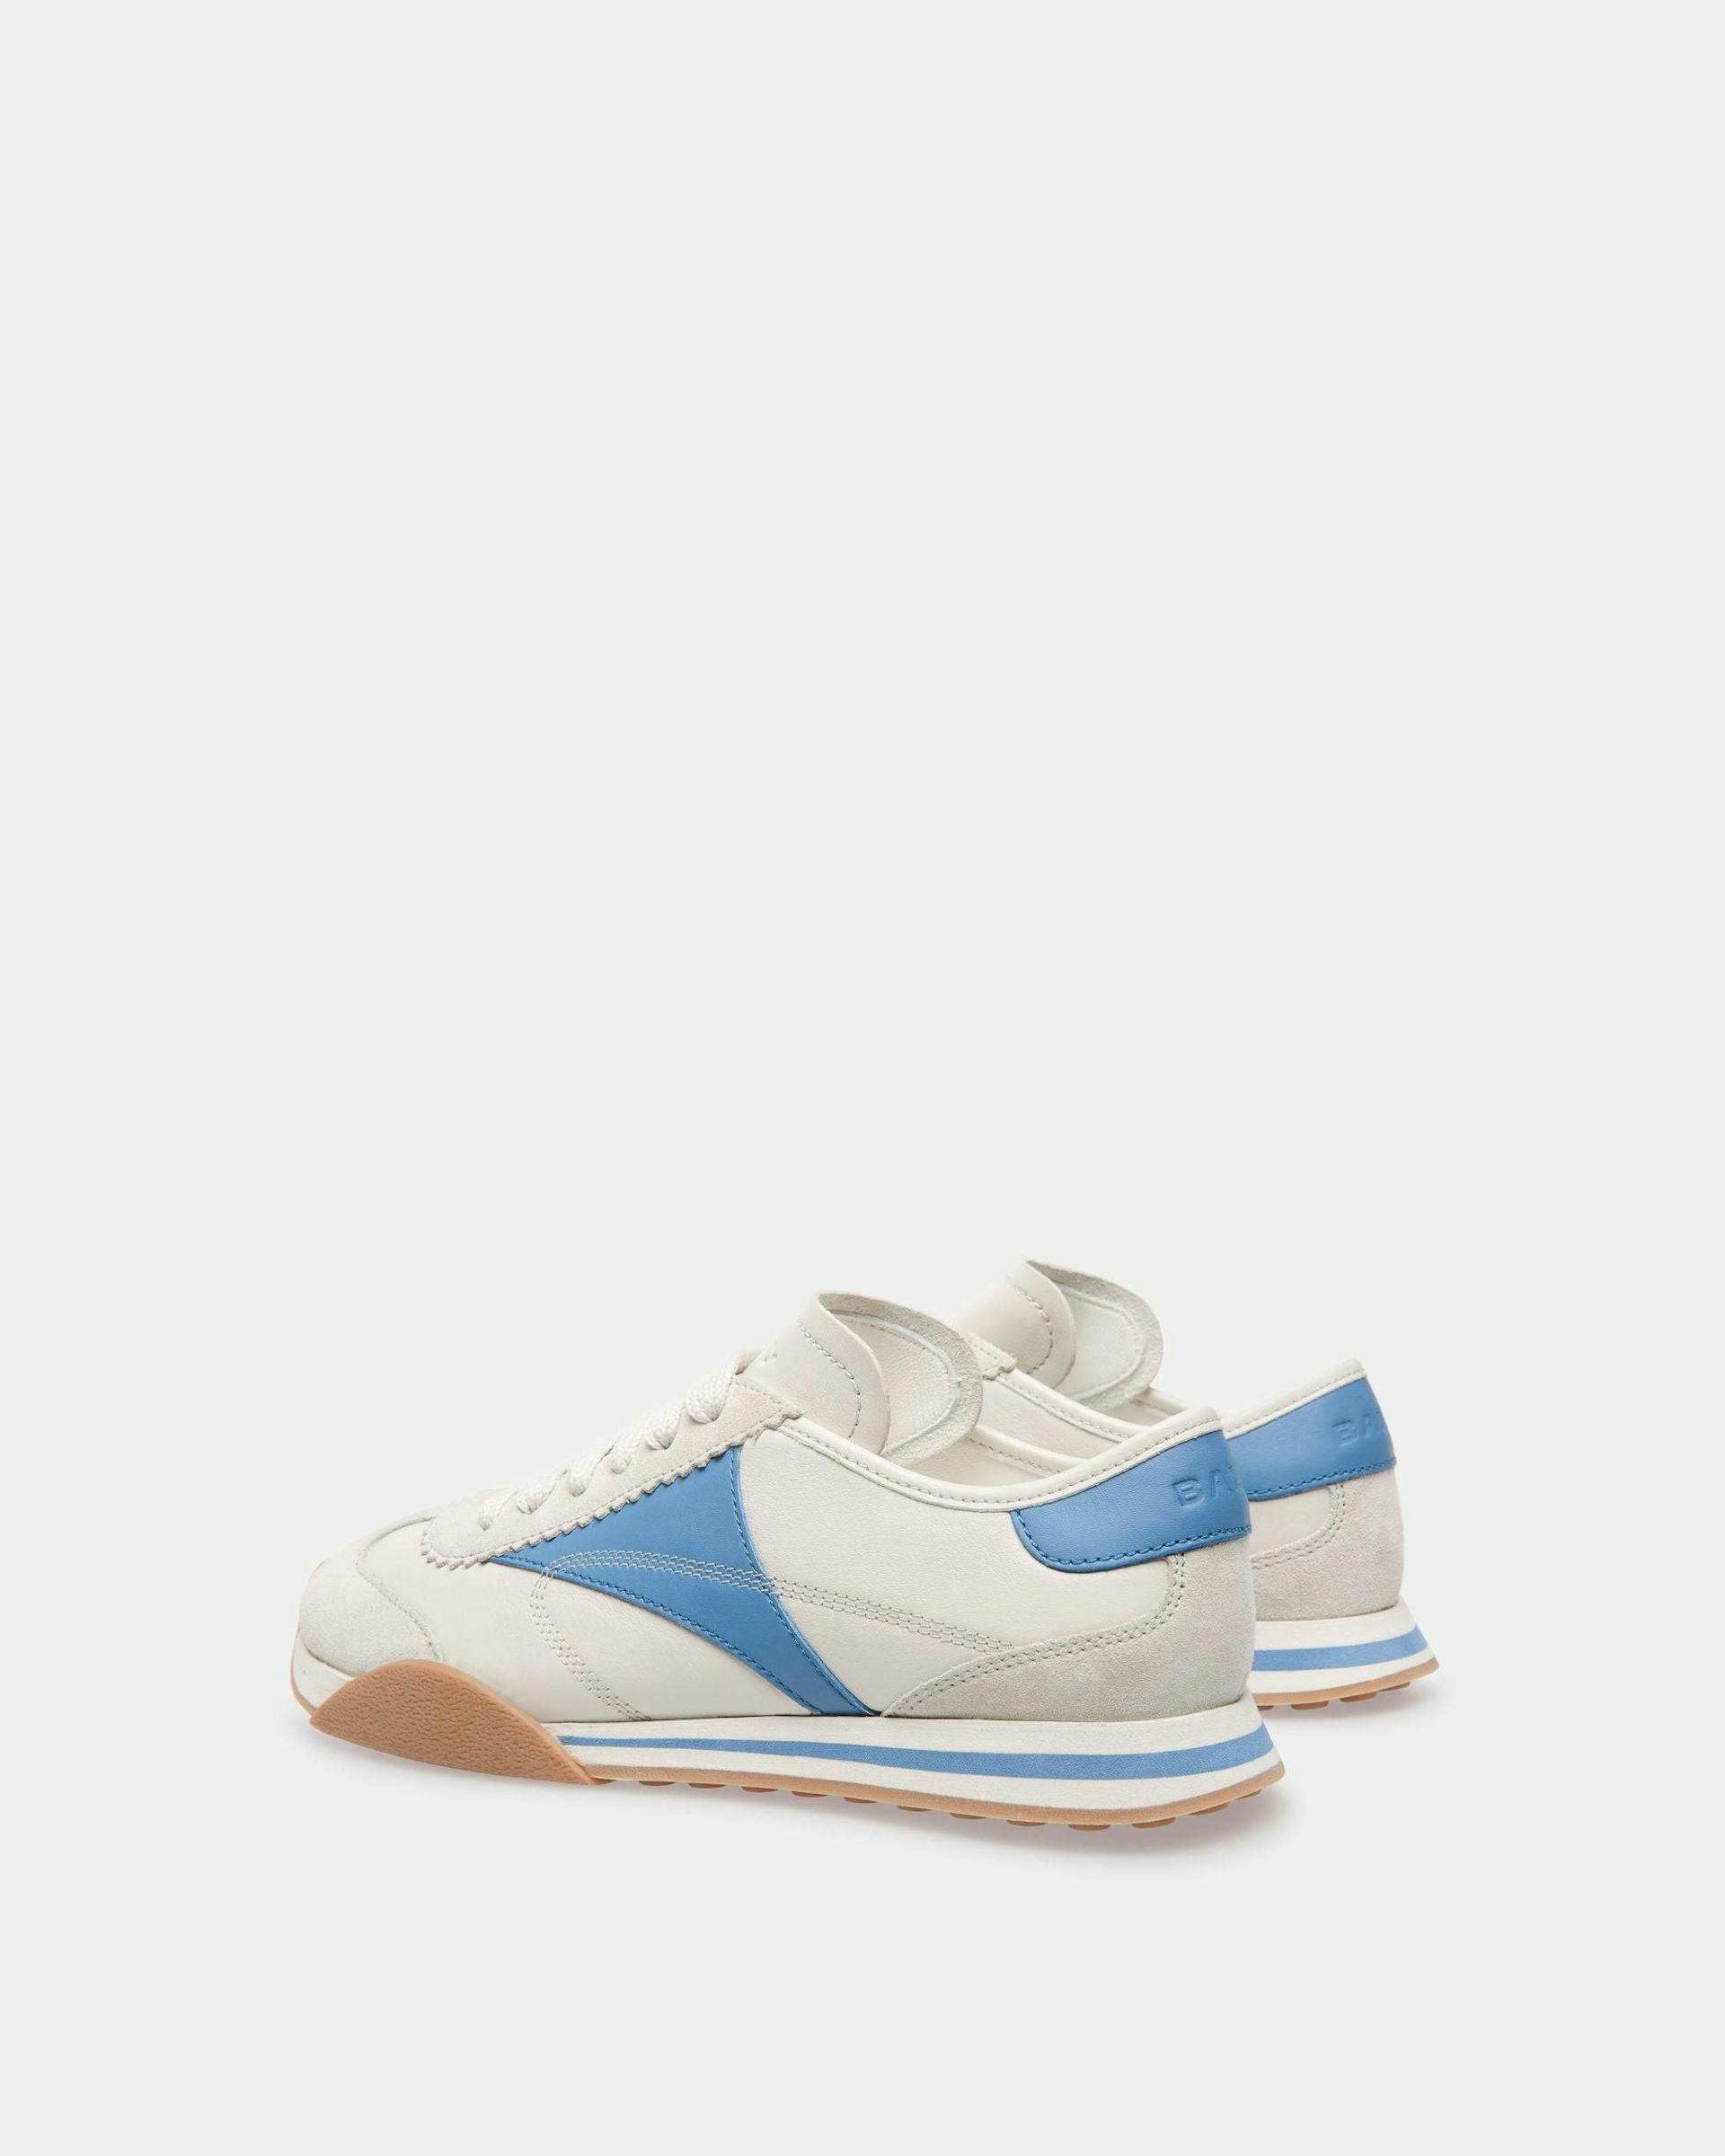 Sneakers Sussex En cuir blanc poussière et bleu - Femme - Bally - 03